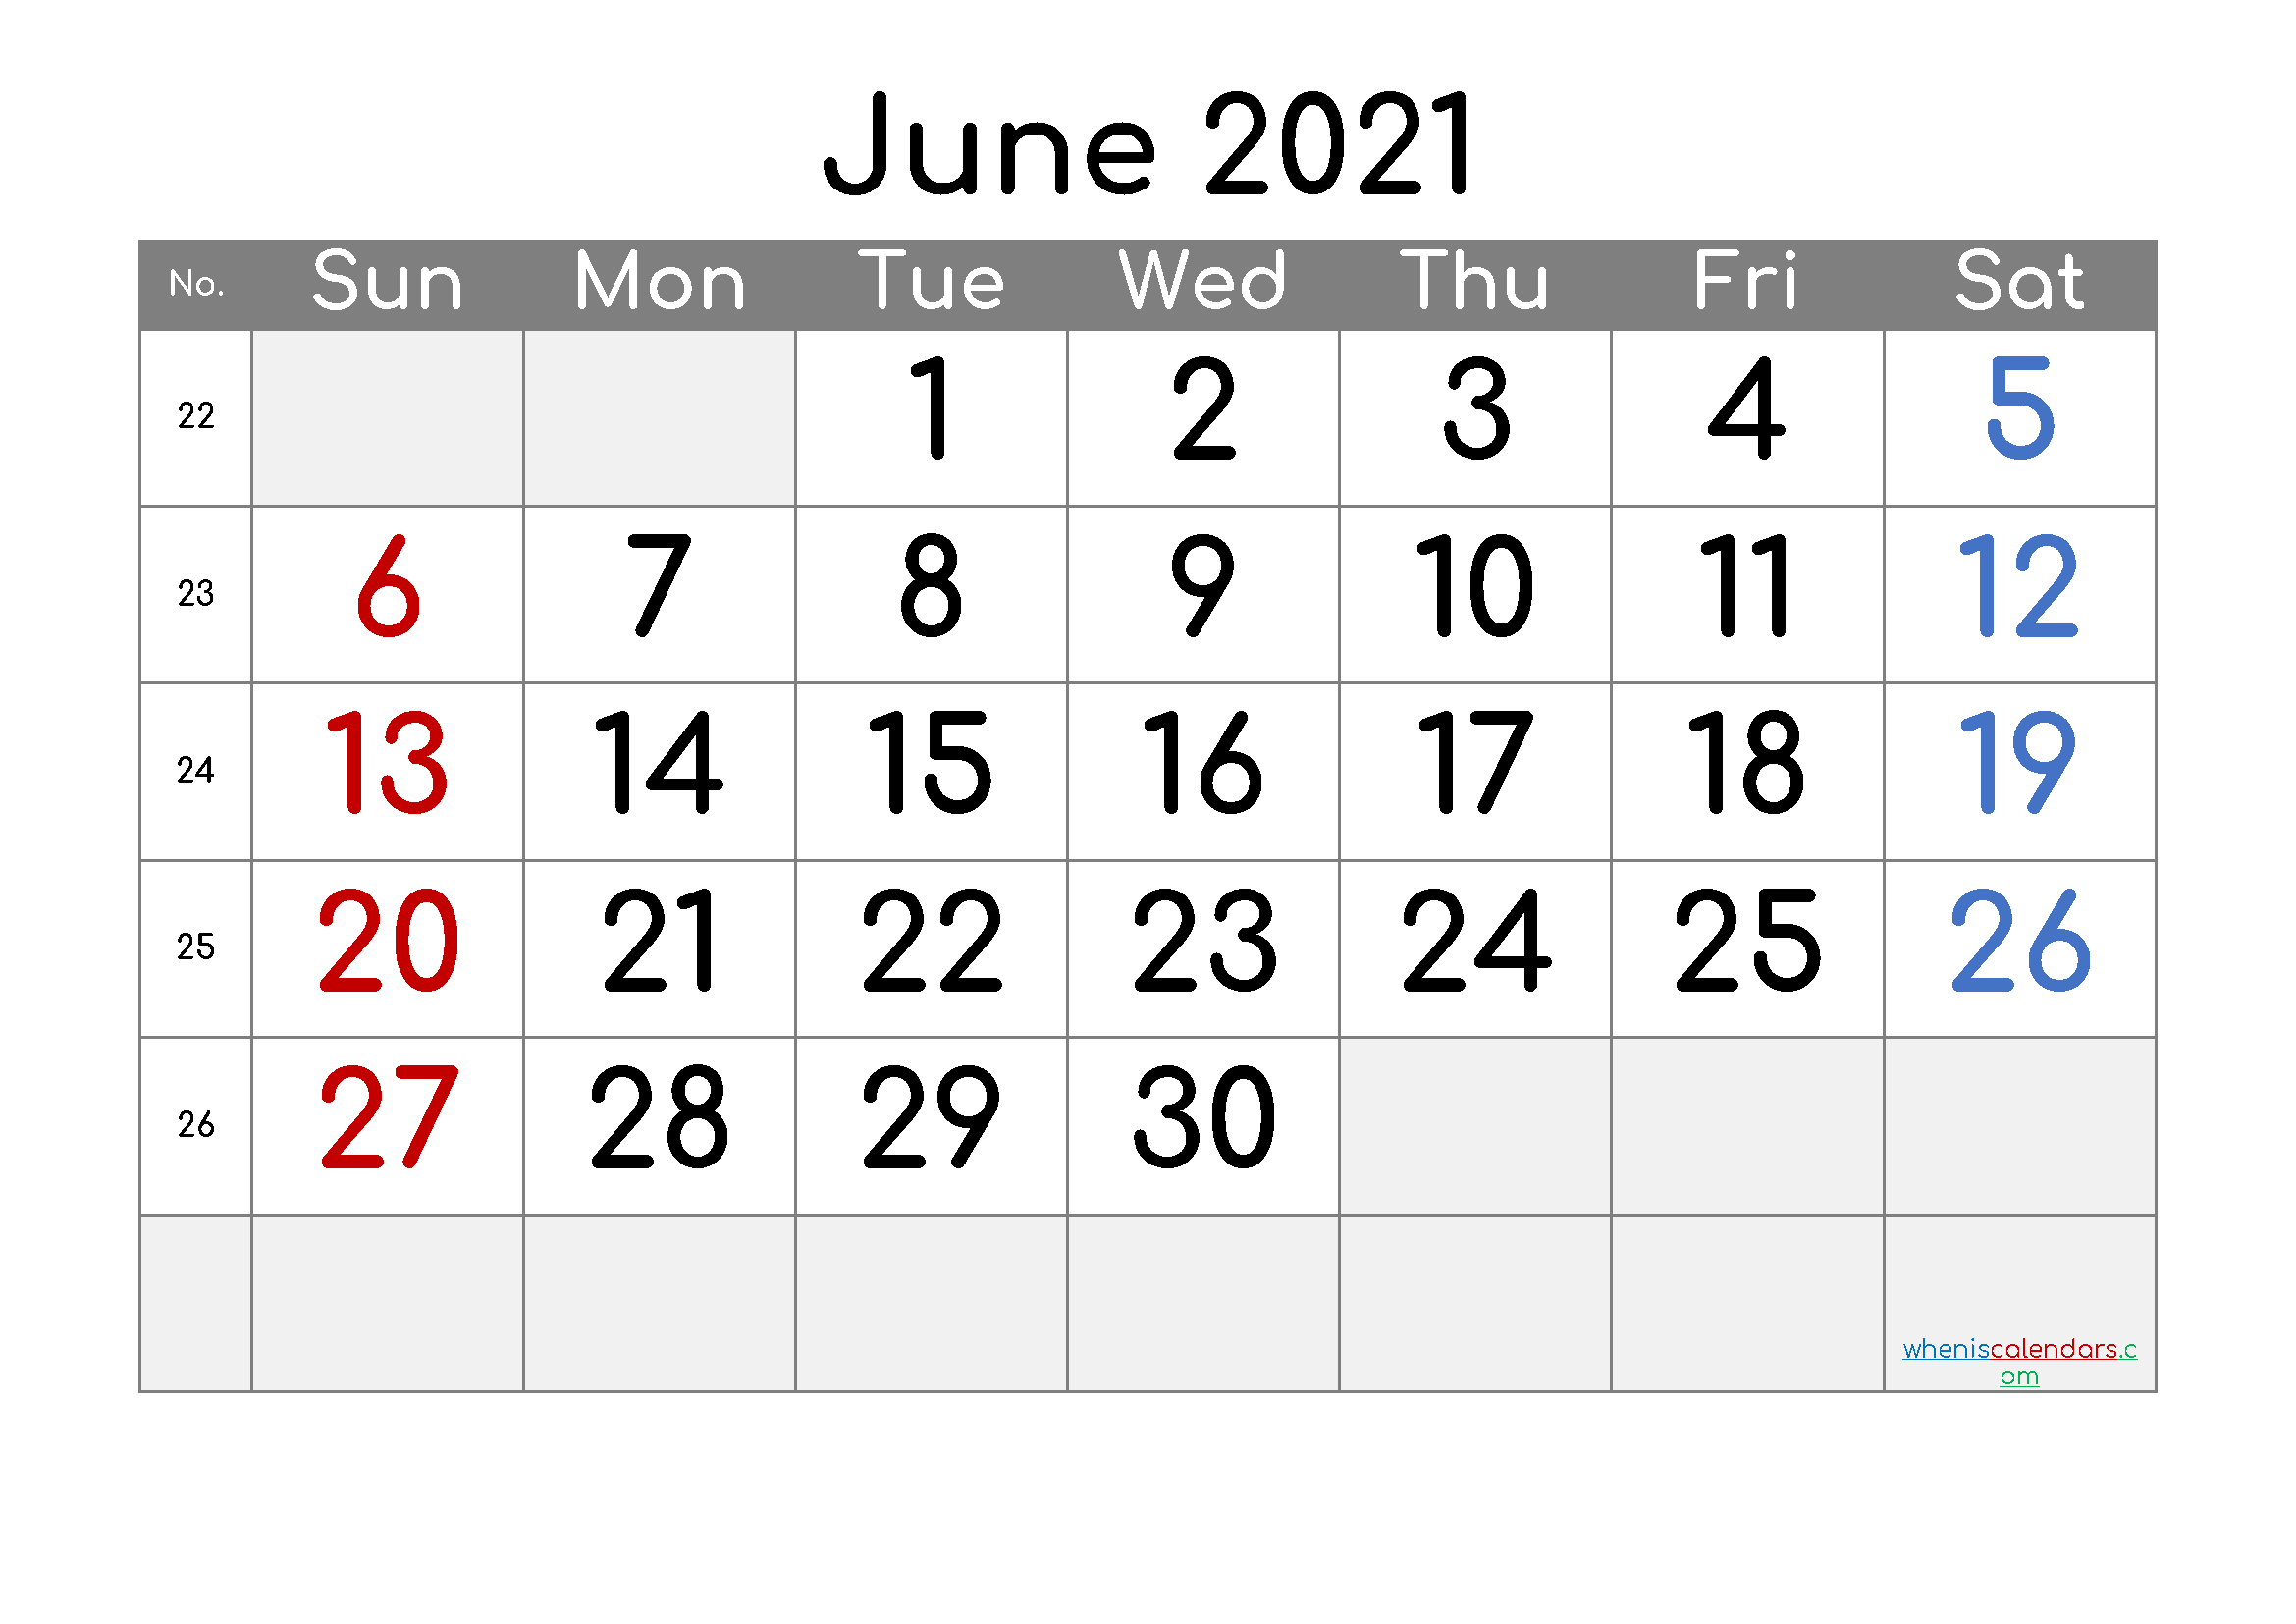 June 2021 Printable Calendar Free